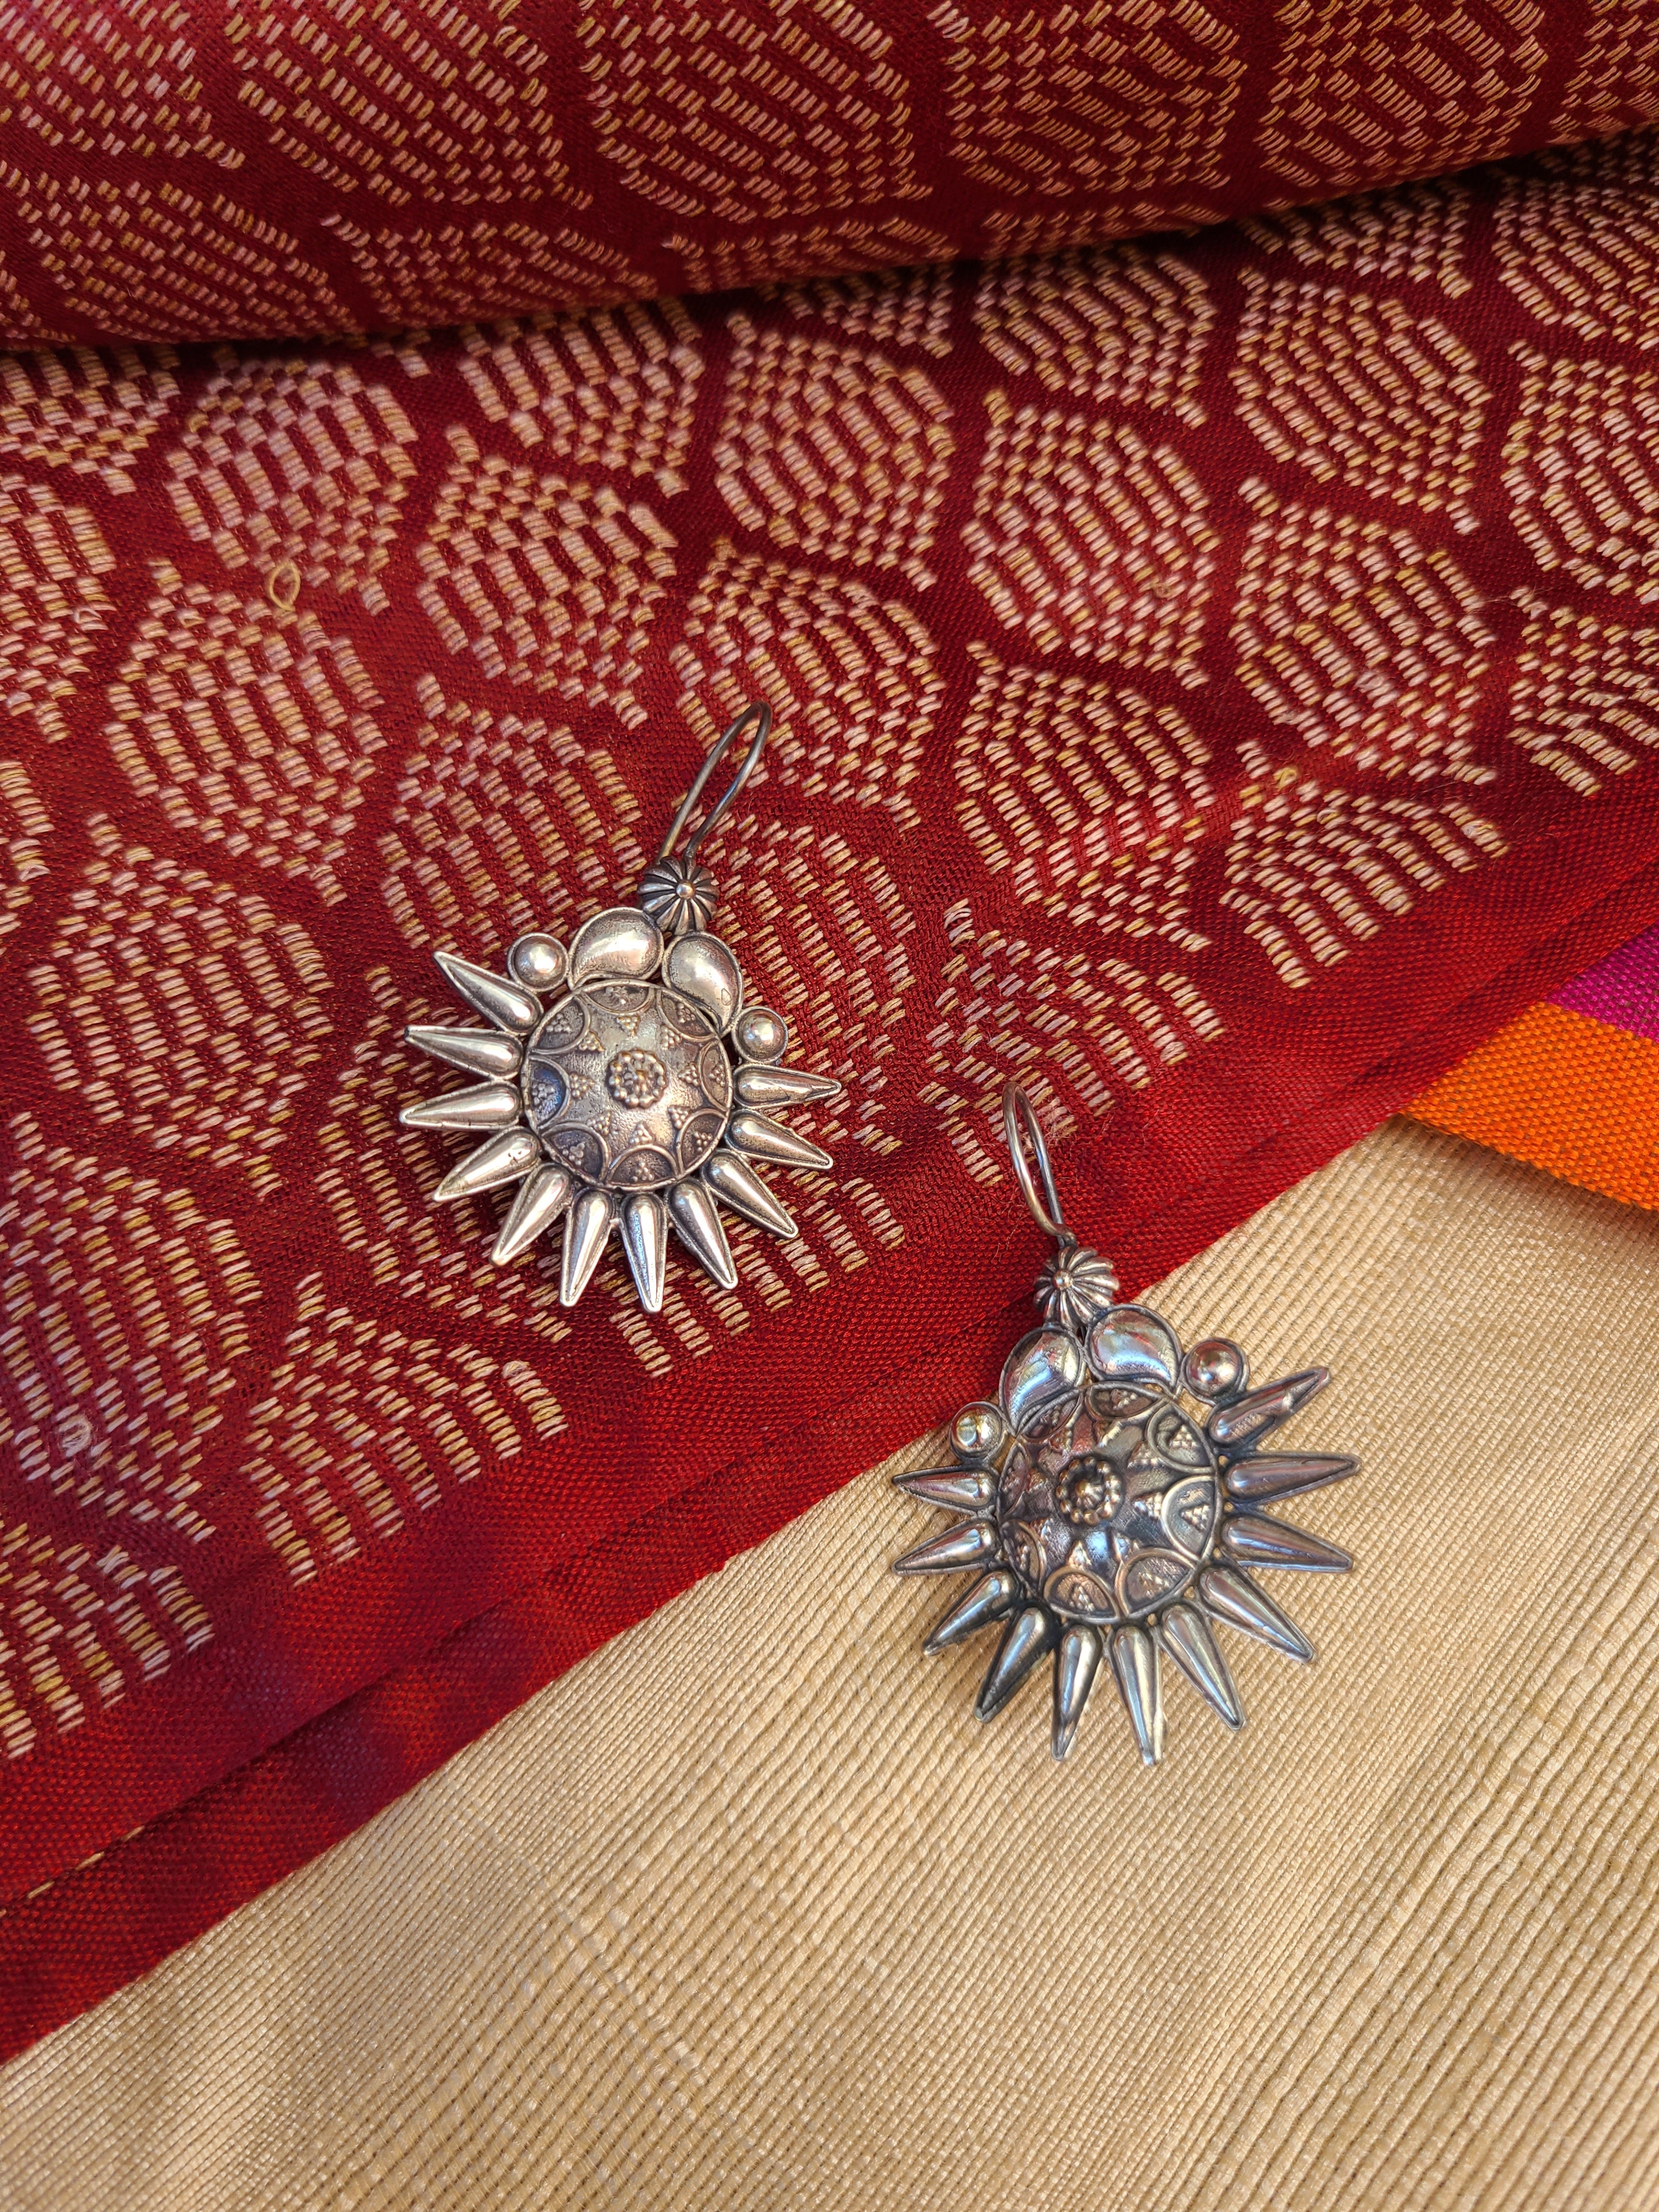 Aditya hook silver alike earrings